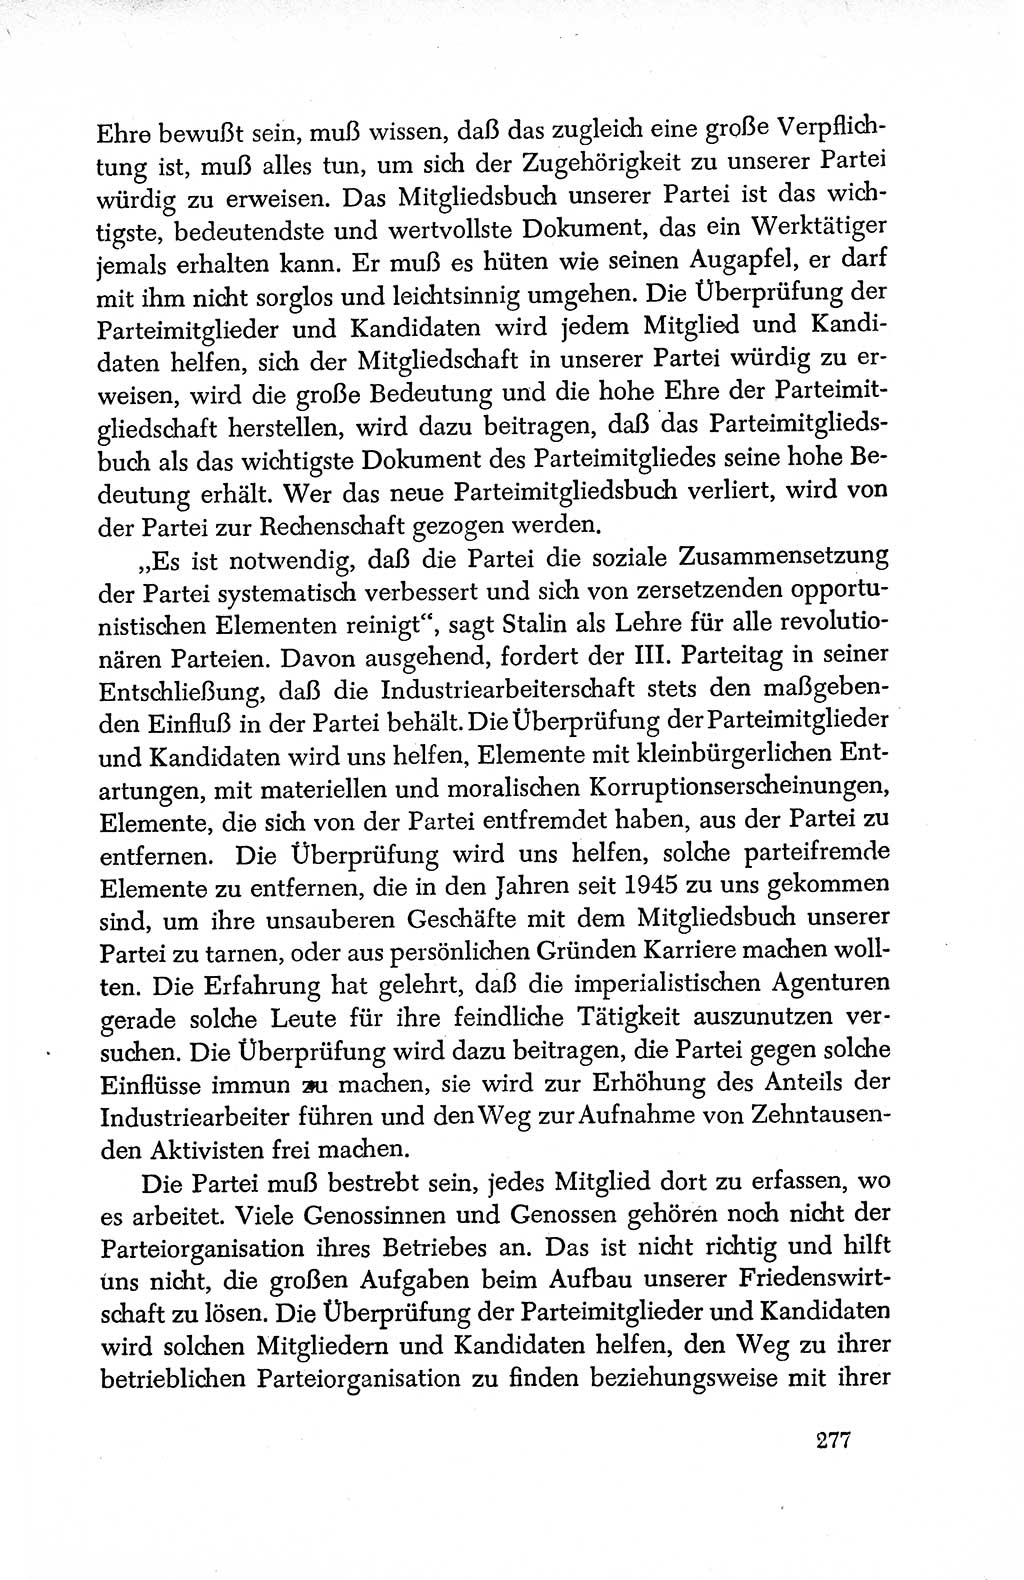 Dokumente der Sozialistischen Einheitspartei Deutschlands (SED) [Deutsche Demokratische Republik (DDR)] 1950-1952, Seite 277 (Dok. SED DDR 1950-1952, S. 277)